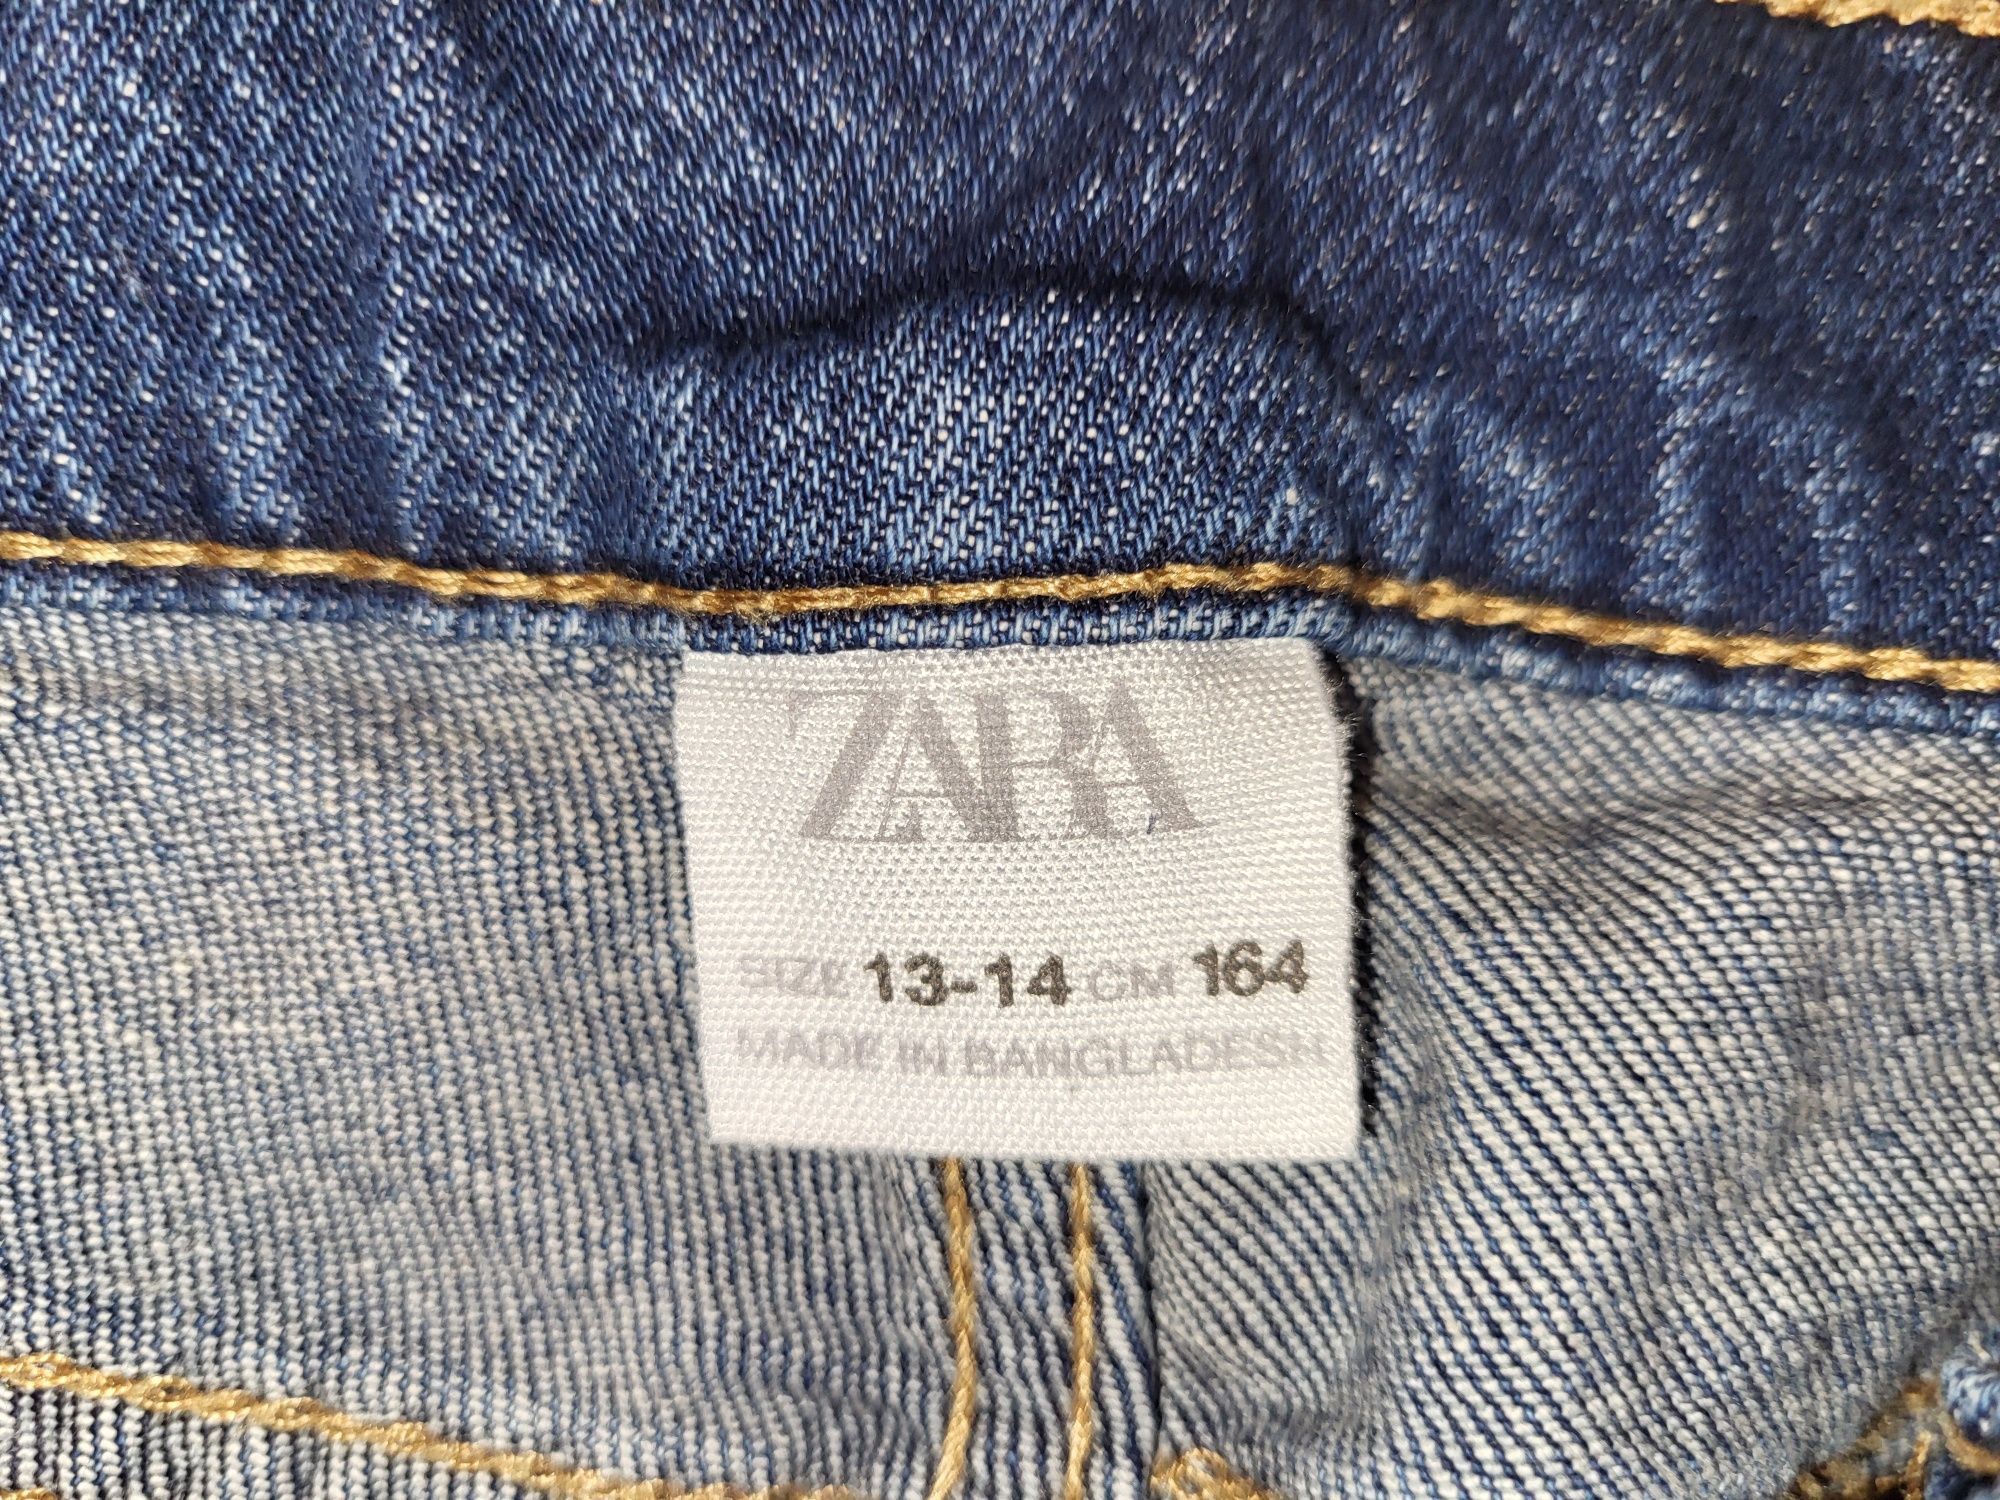 Zara 164 jeansy granatowe straight fit spodnie dżinsowe